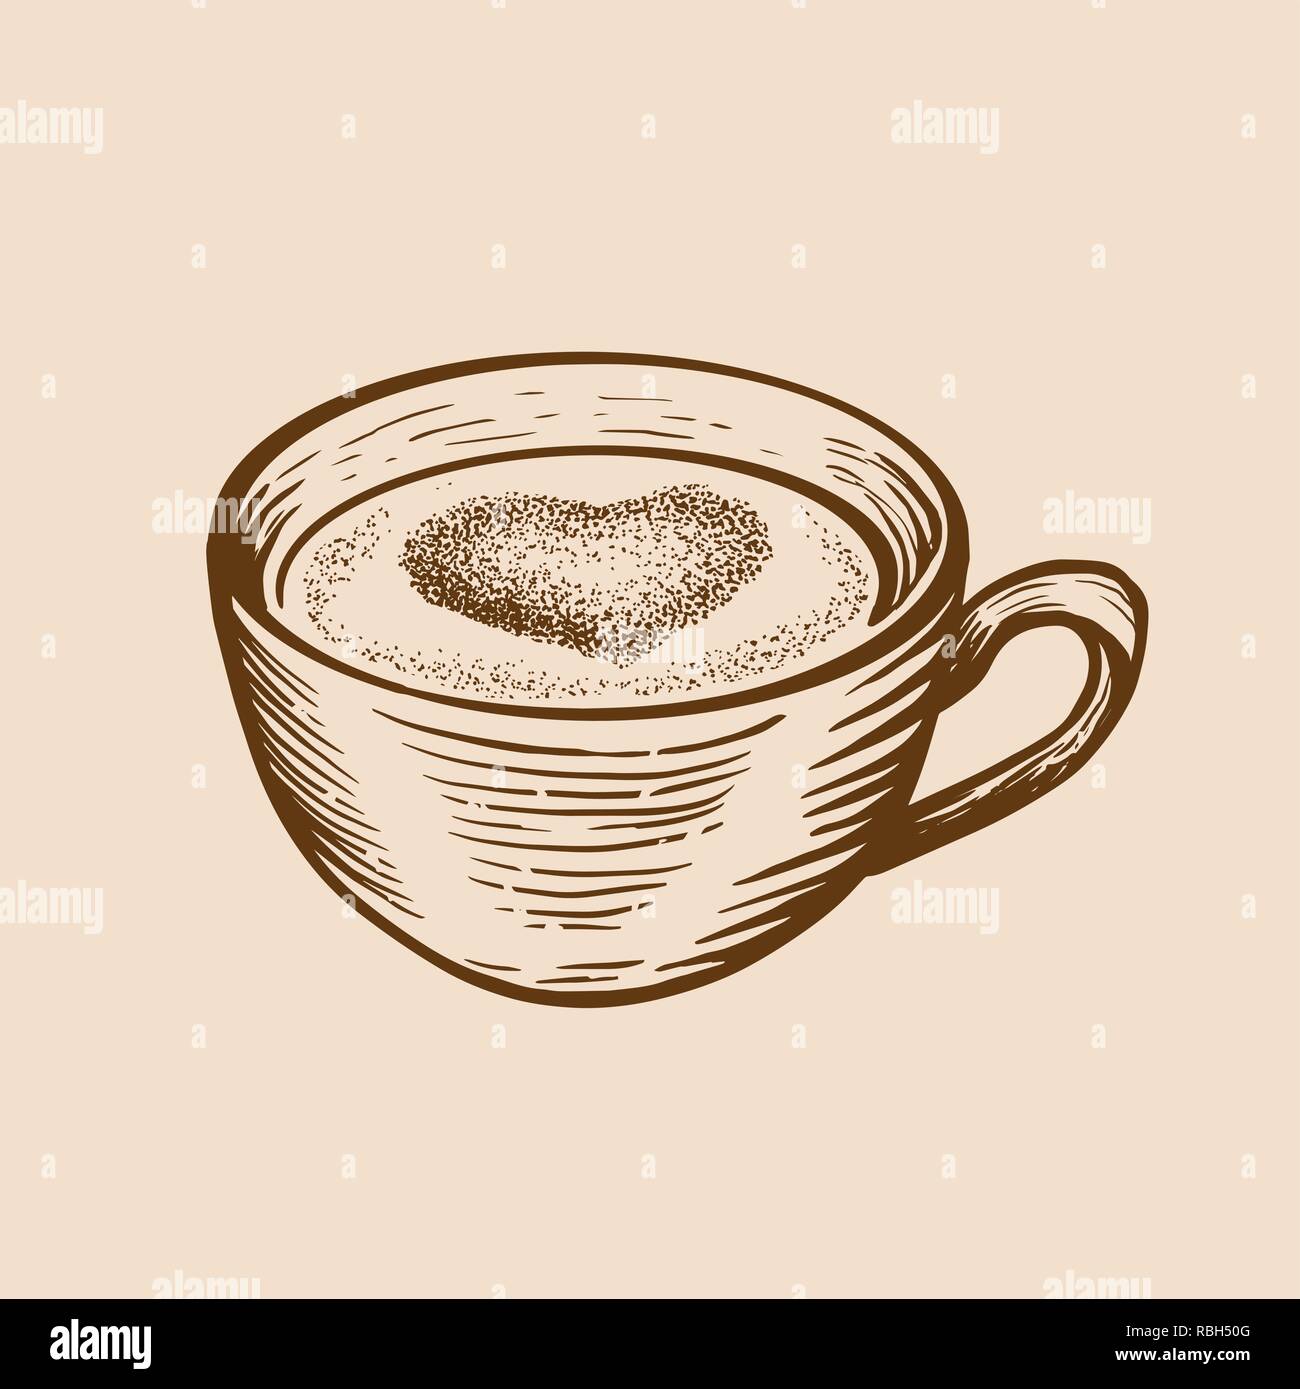 Handskizze Tasse Tee Kaffee mit Herz gezeichnet. Graviert stil Vector Illustration. Stock Vektor